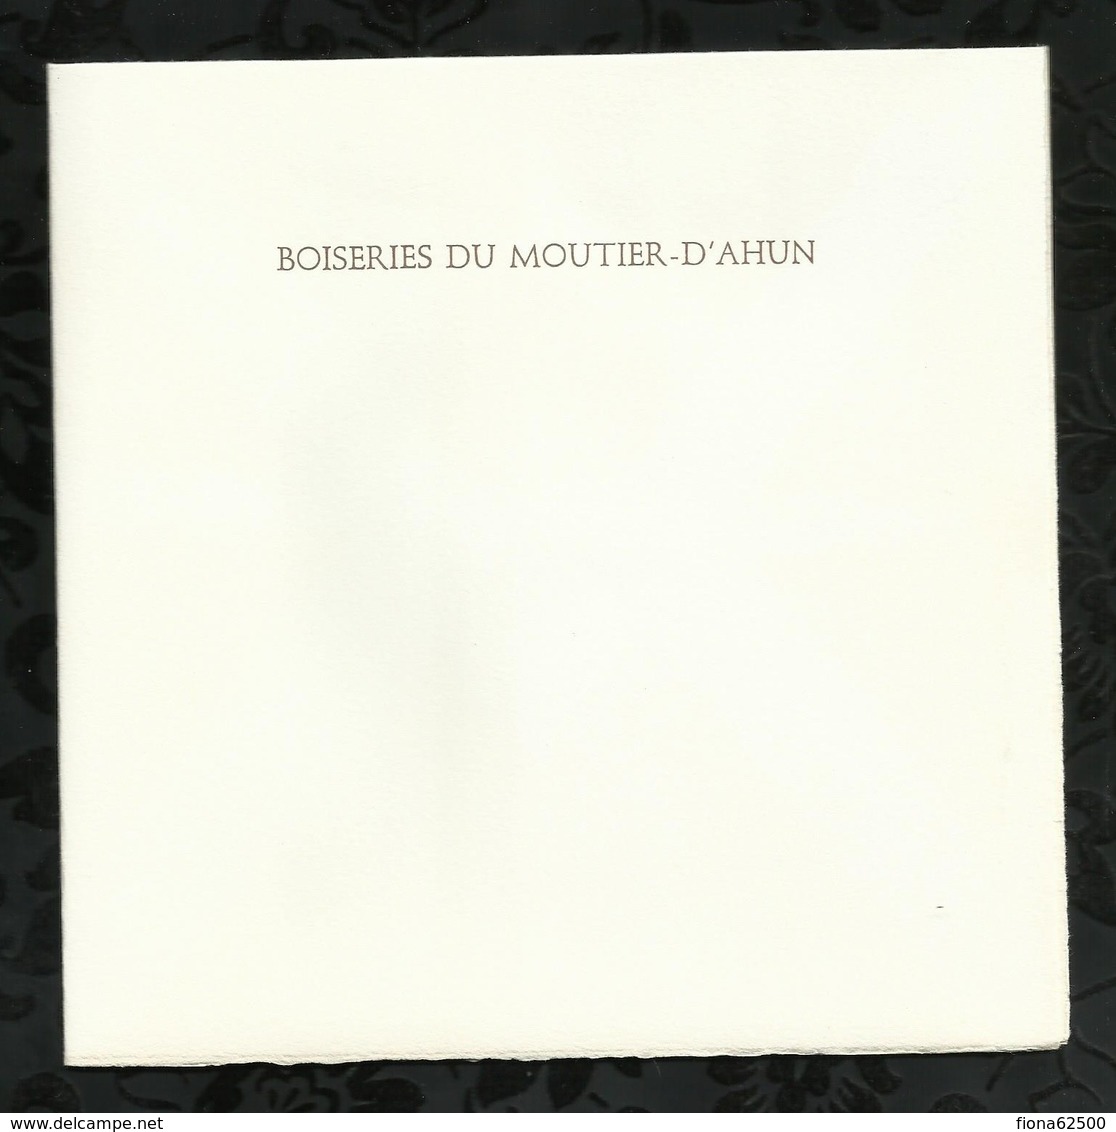 PREMIER JOUR . BOISERIES DE MOUTIER-D'AHUN . 26 MAI 1973 . MOUTIER-D'AHUN . - 1970-1979